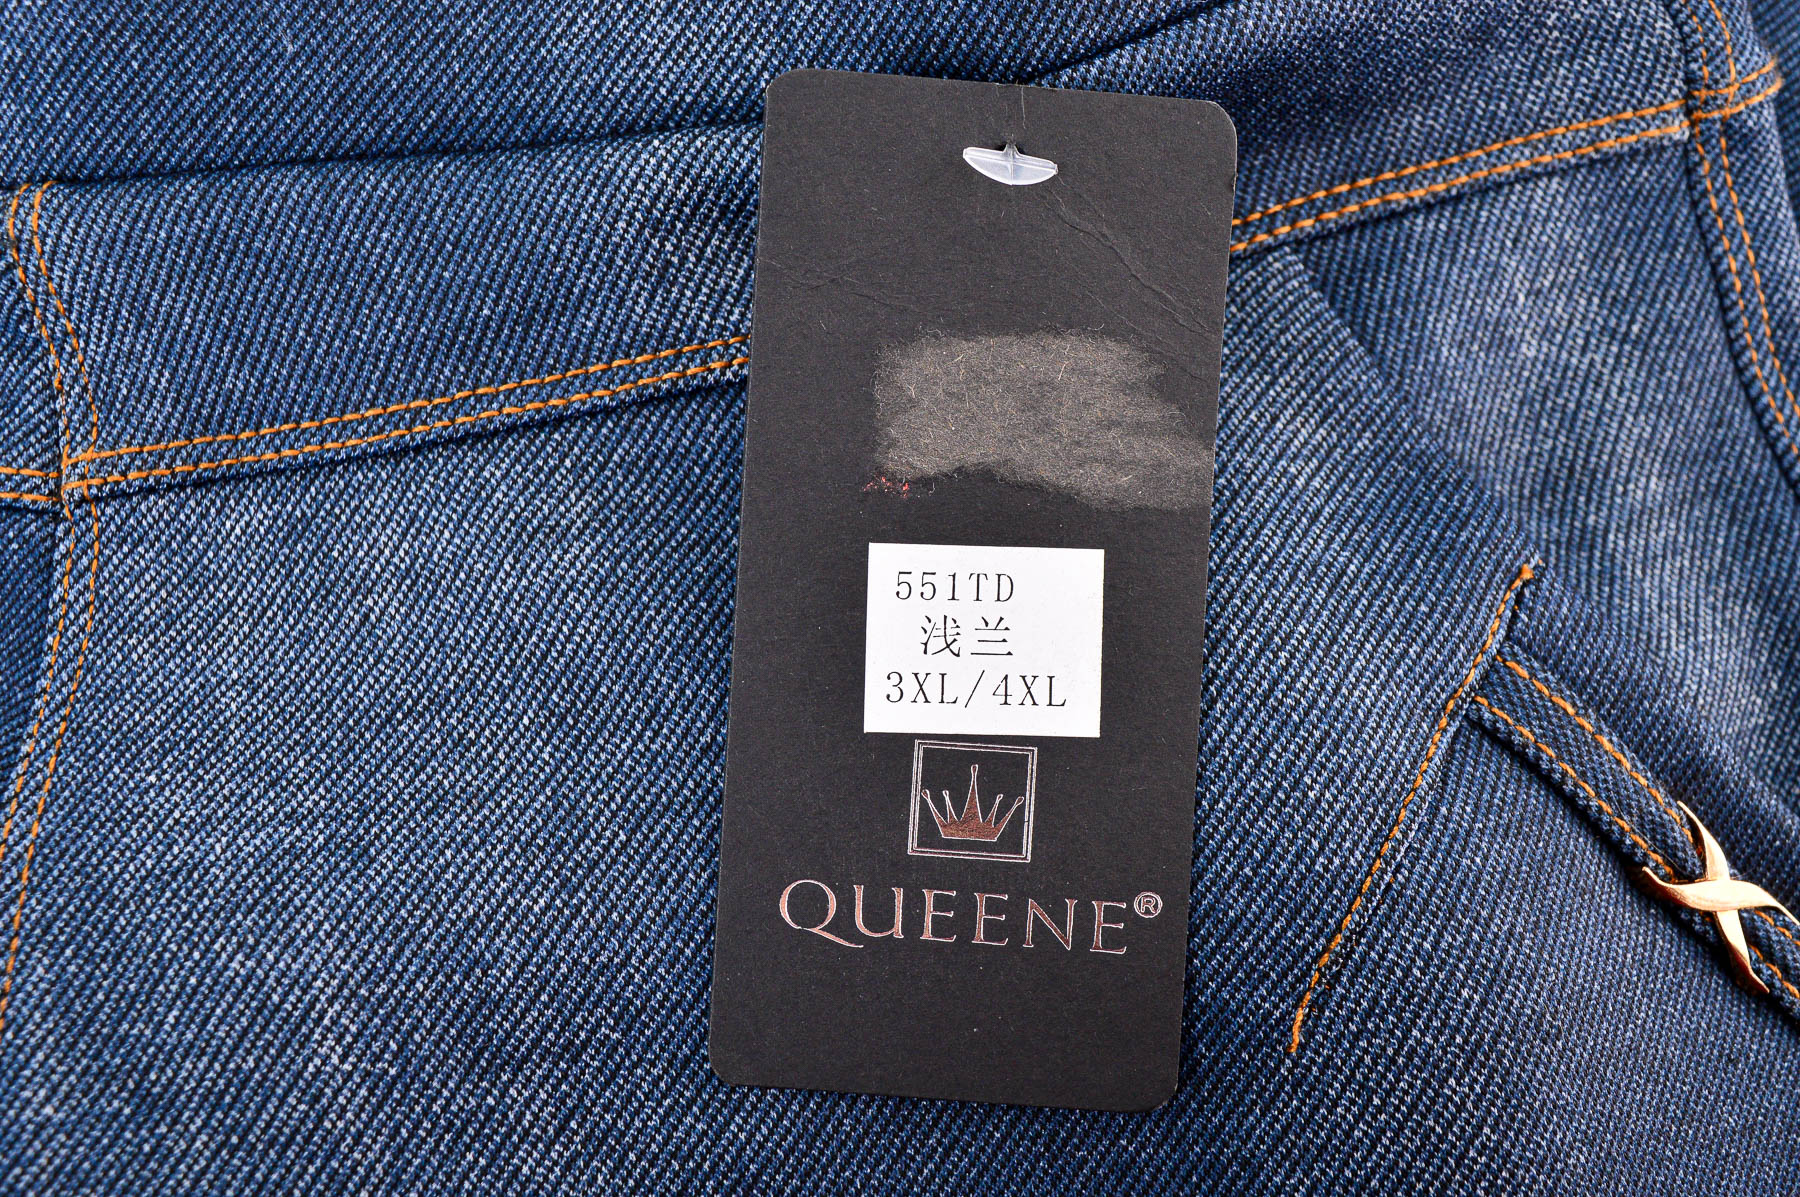 Spodnie damskie - Queene - 2